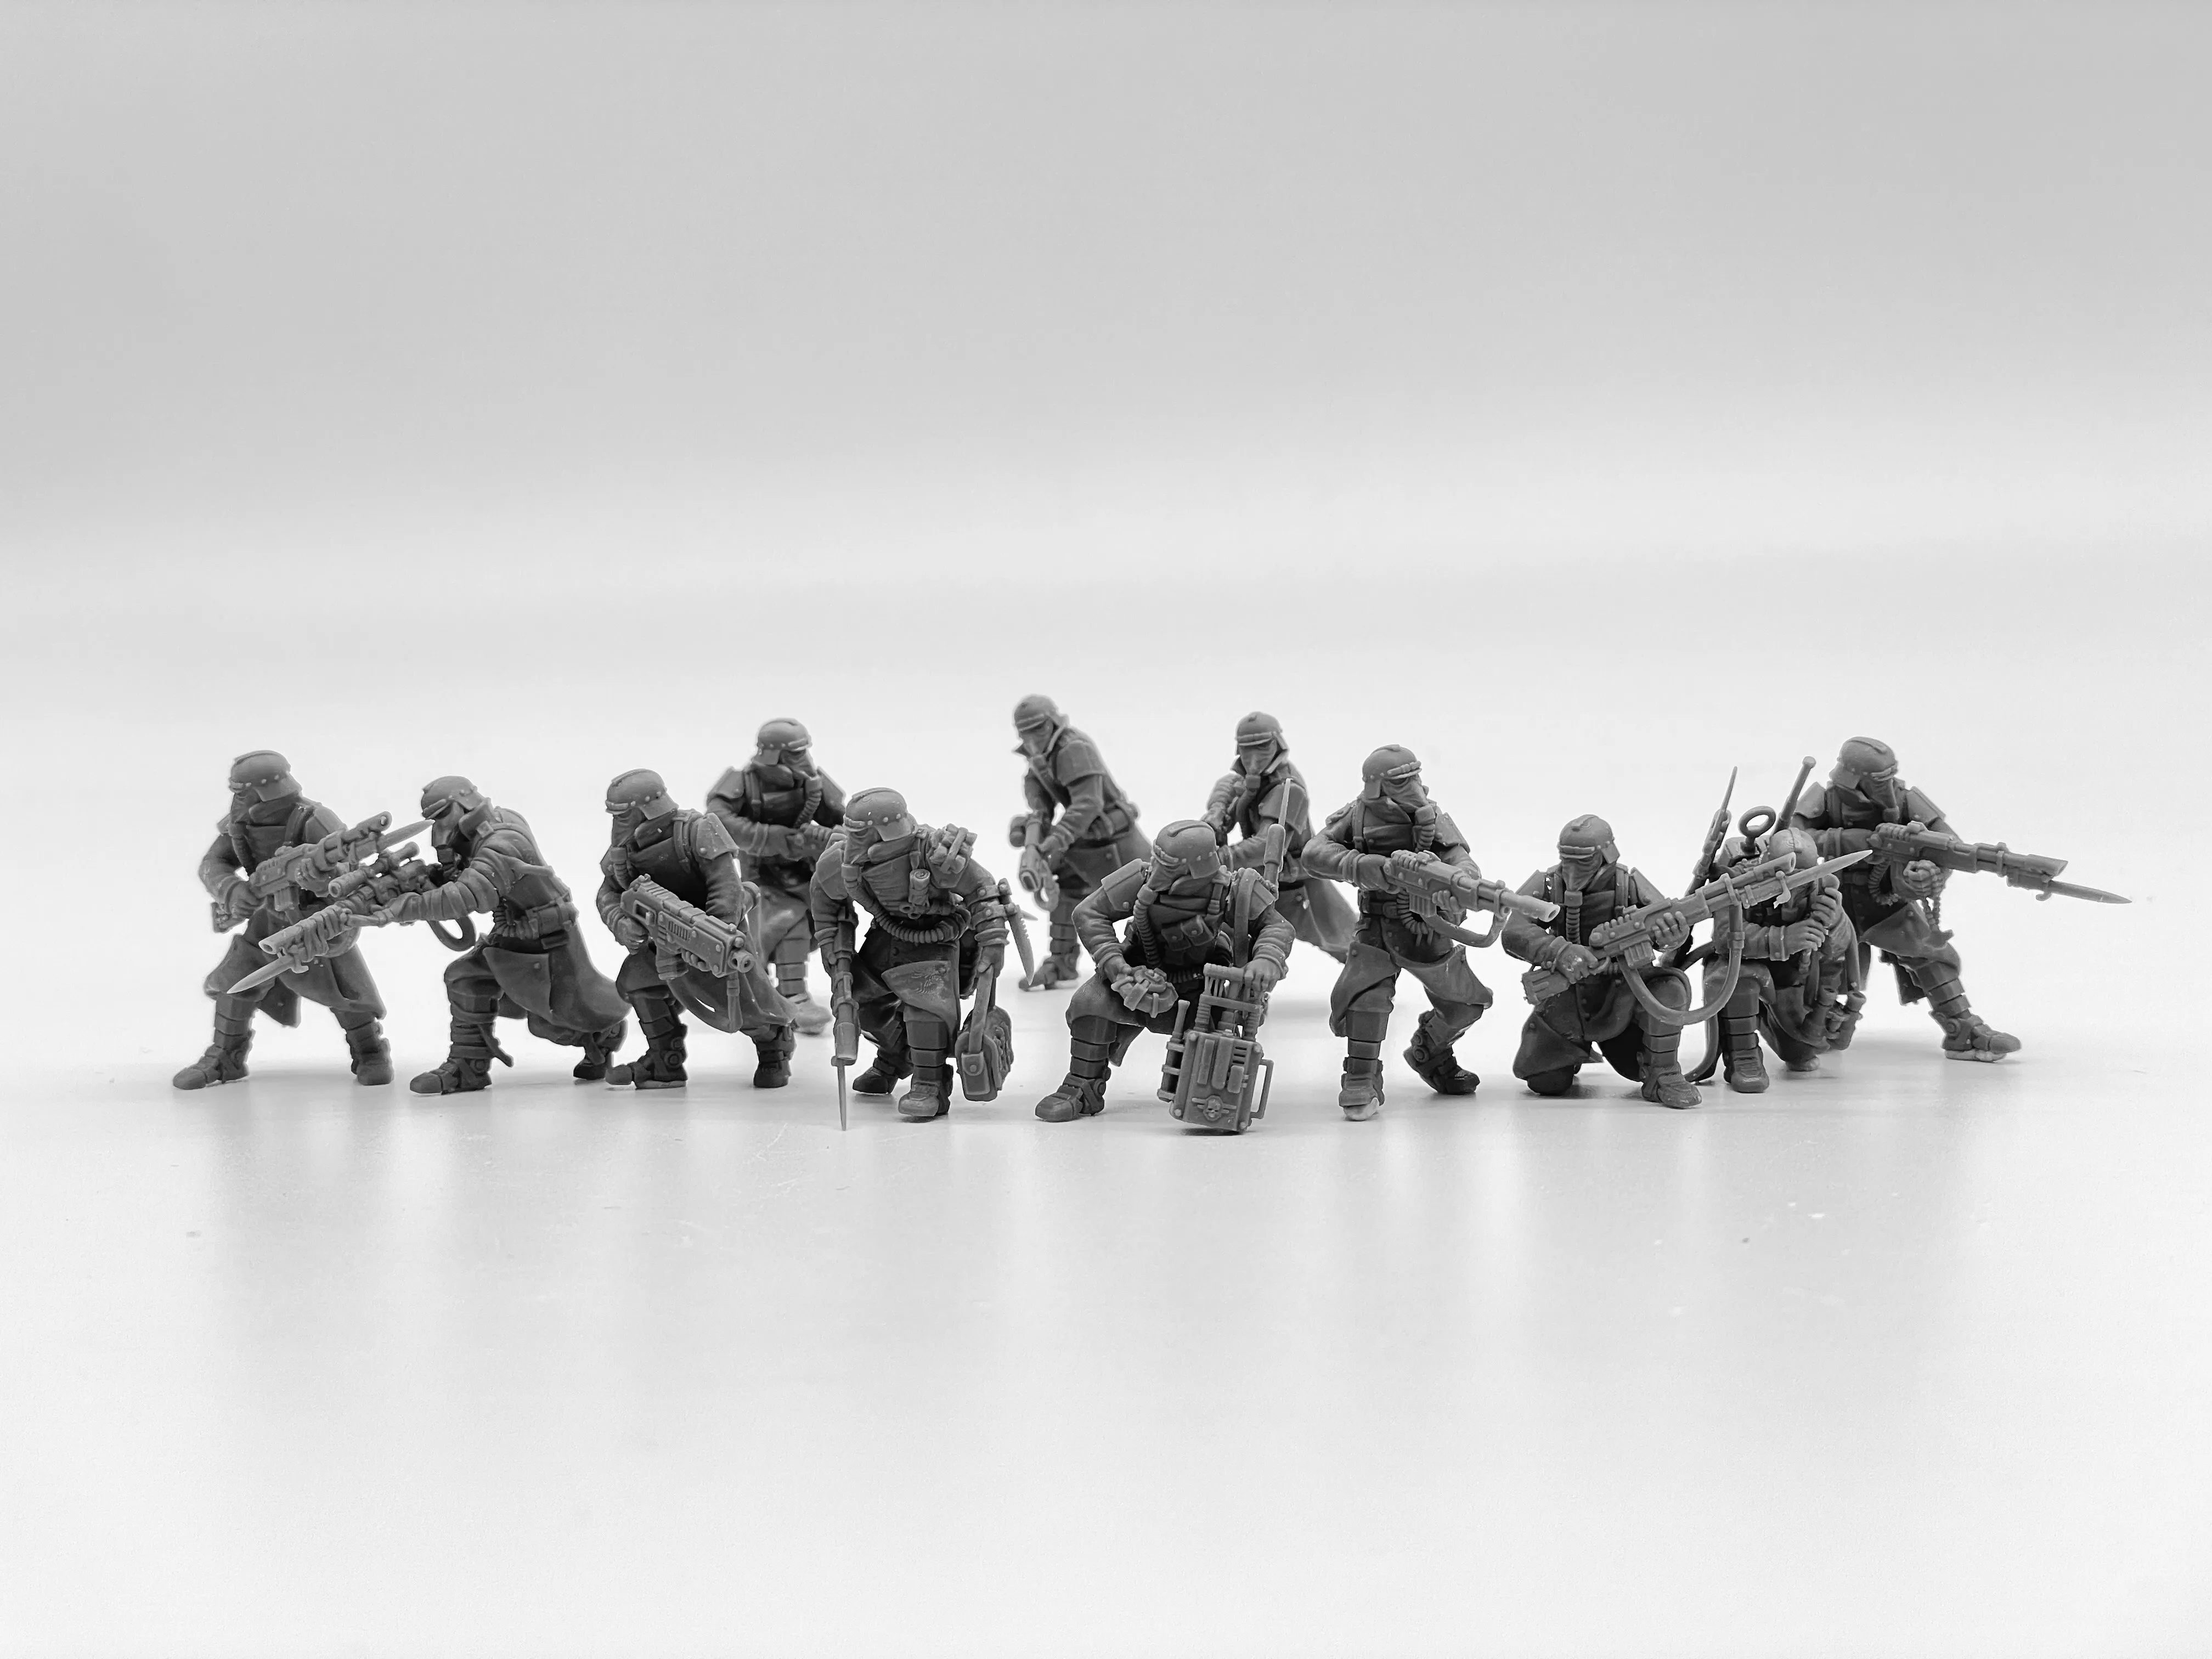 Набор моделей из смолы Imperial Force Death Division Kill, миниатюрные военные игровые Неокрашенные фигурки солдат, масштаб 28 мм, настольные игры